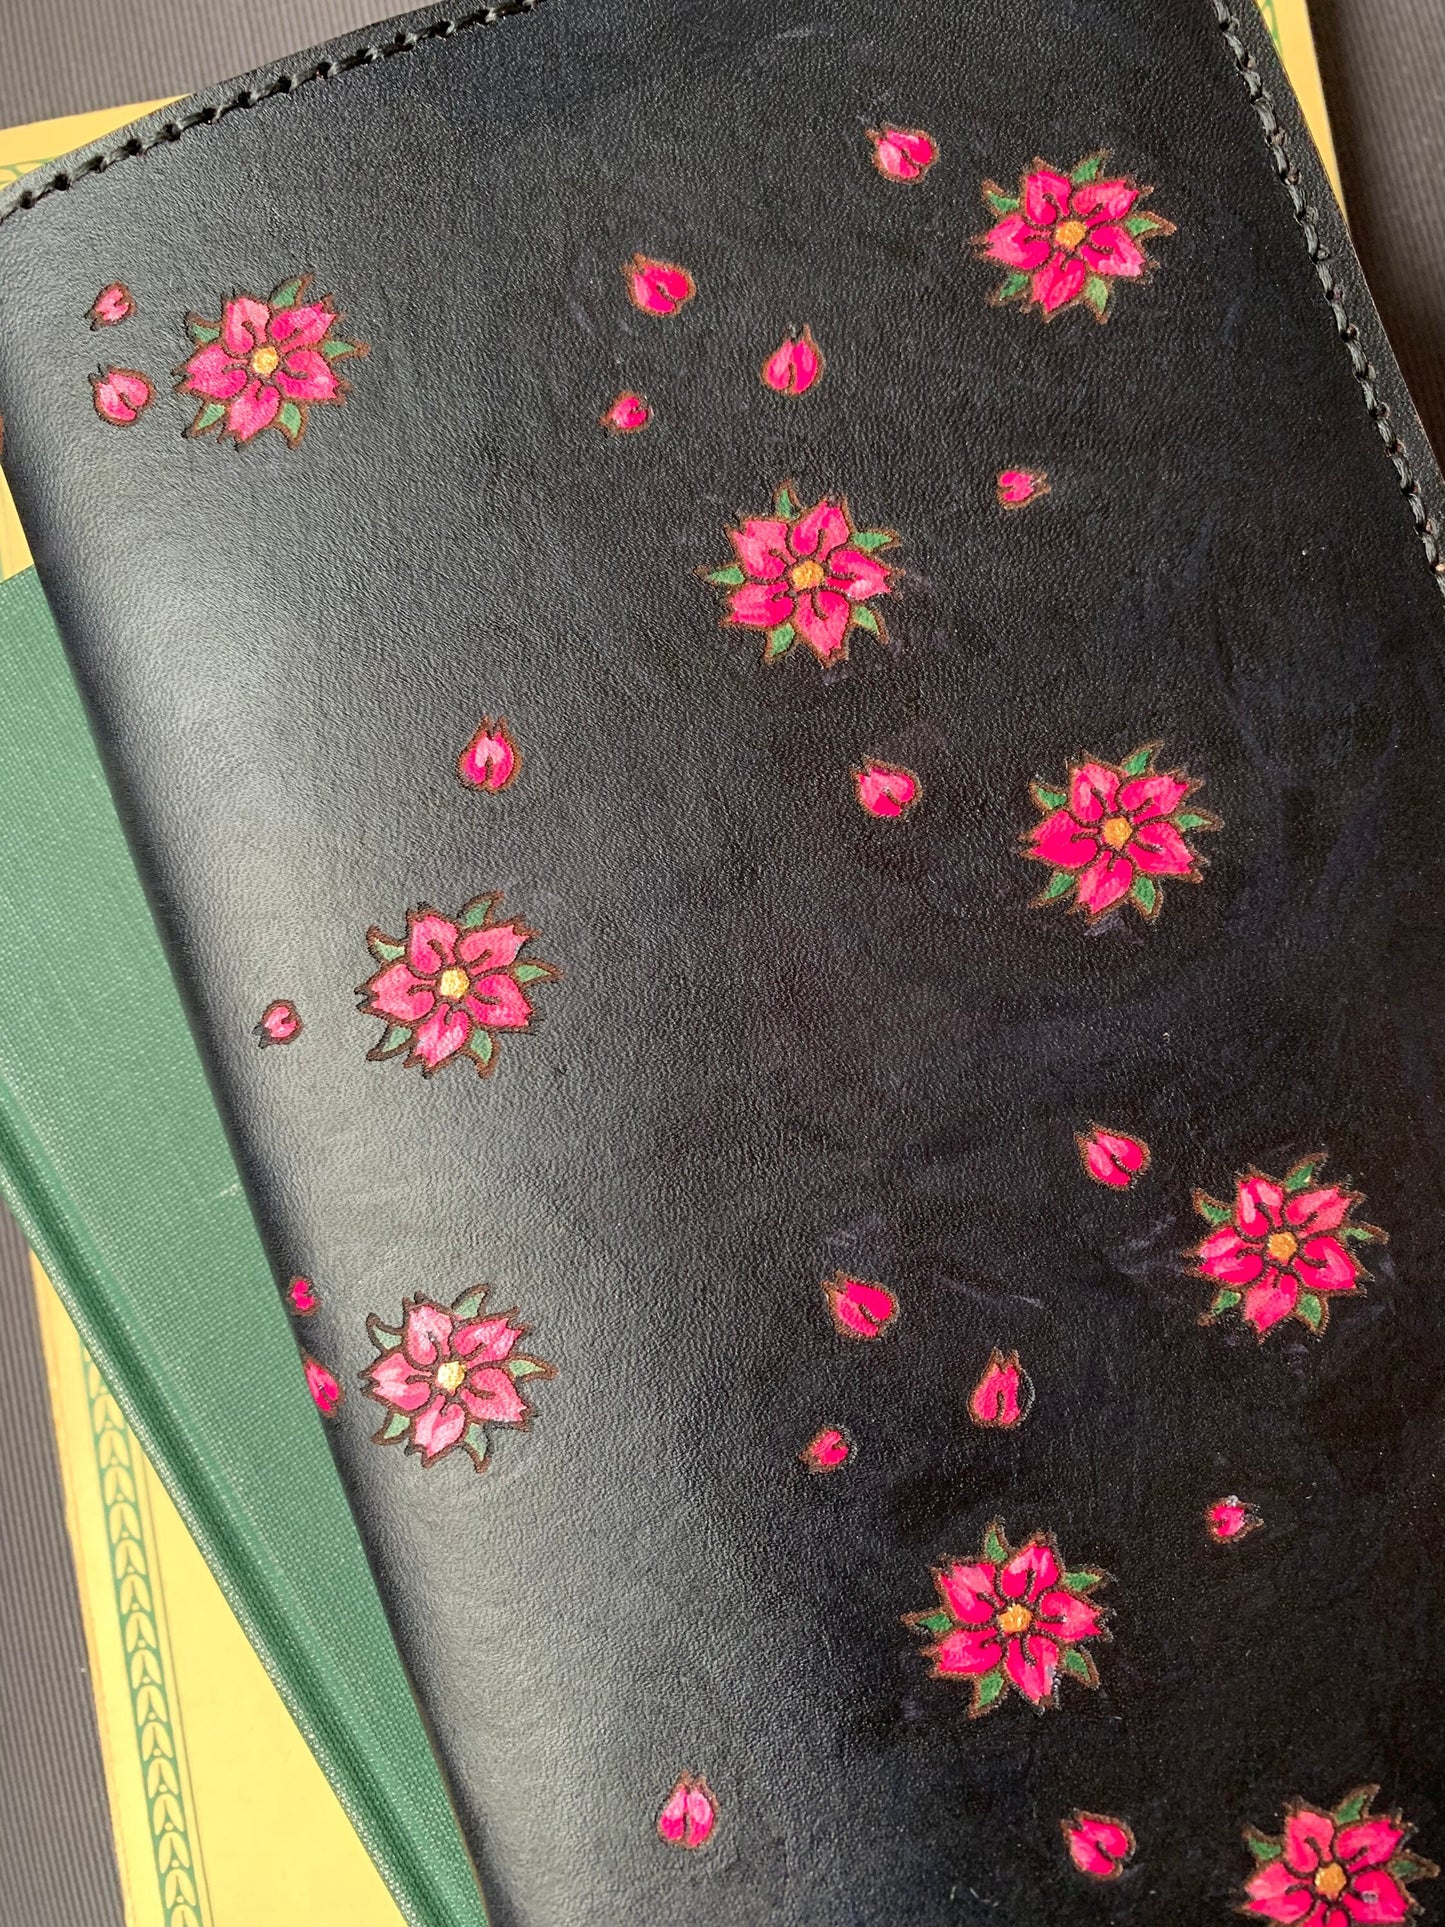 Sakura Blossom Leather Journal Cover